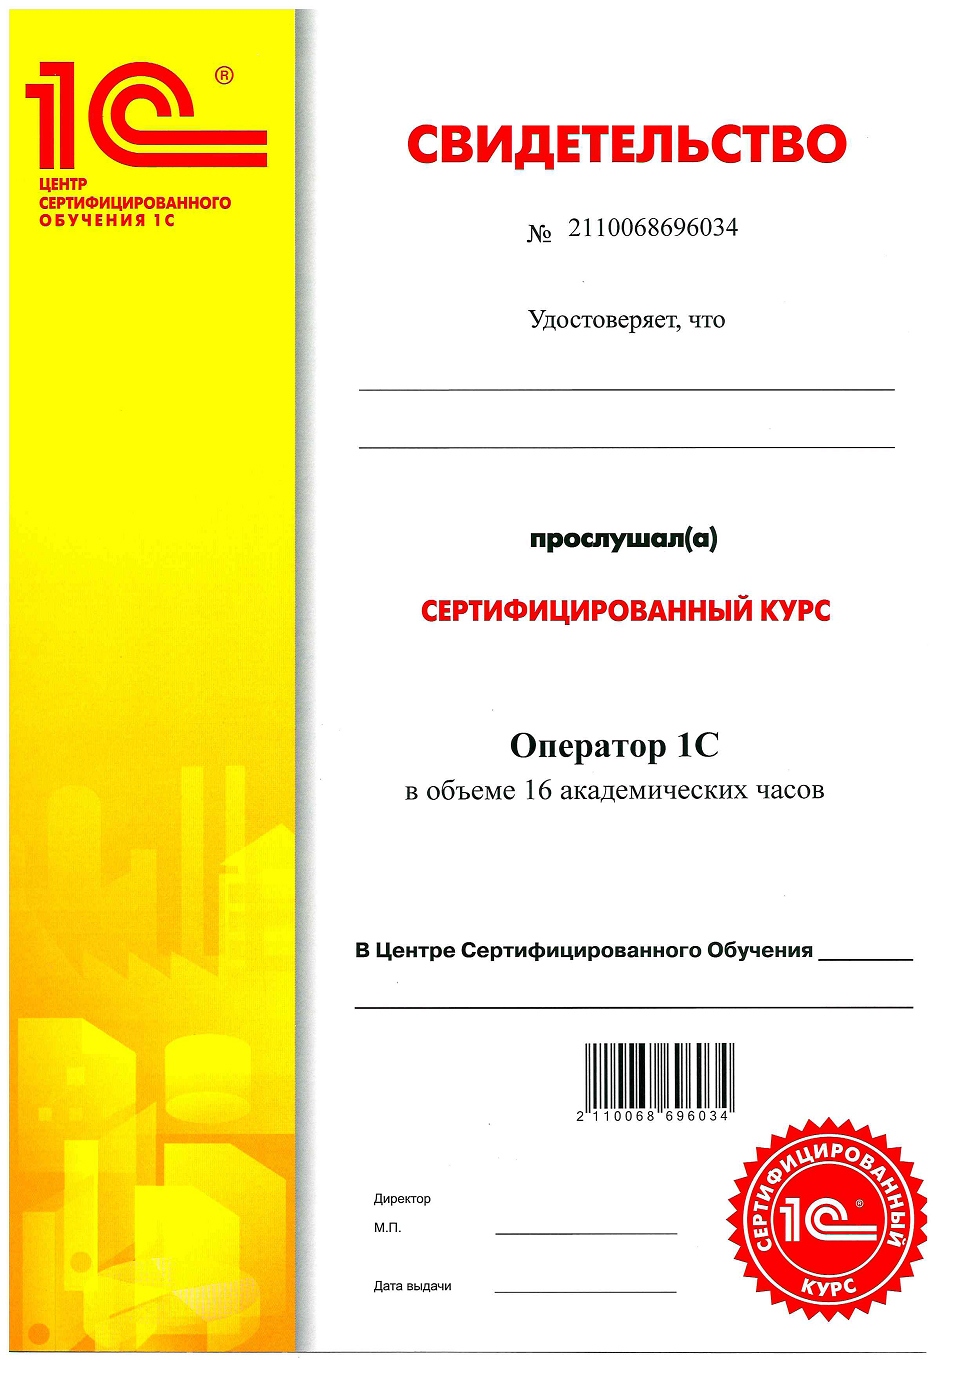 Курс Оператор 1С Сертификат Центр Сертифицированного Обучения Первый БИТ Санкт-Петербург